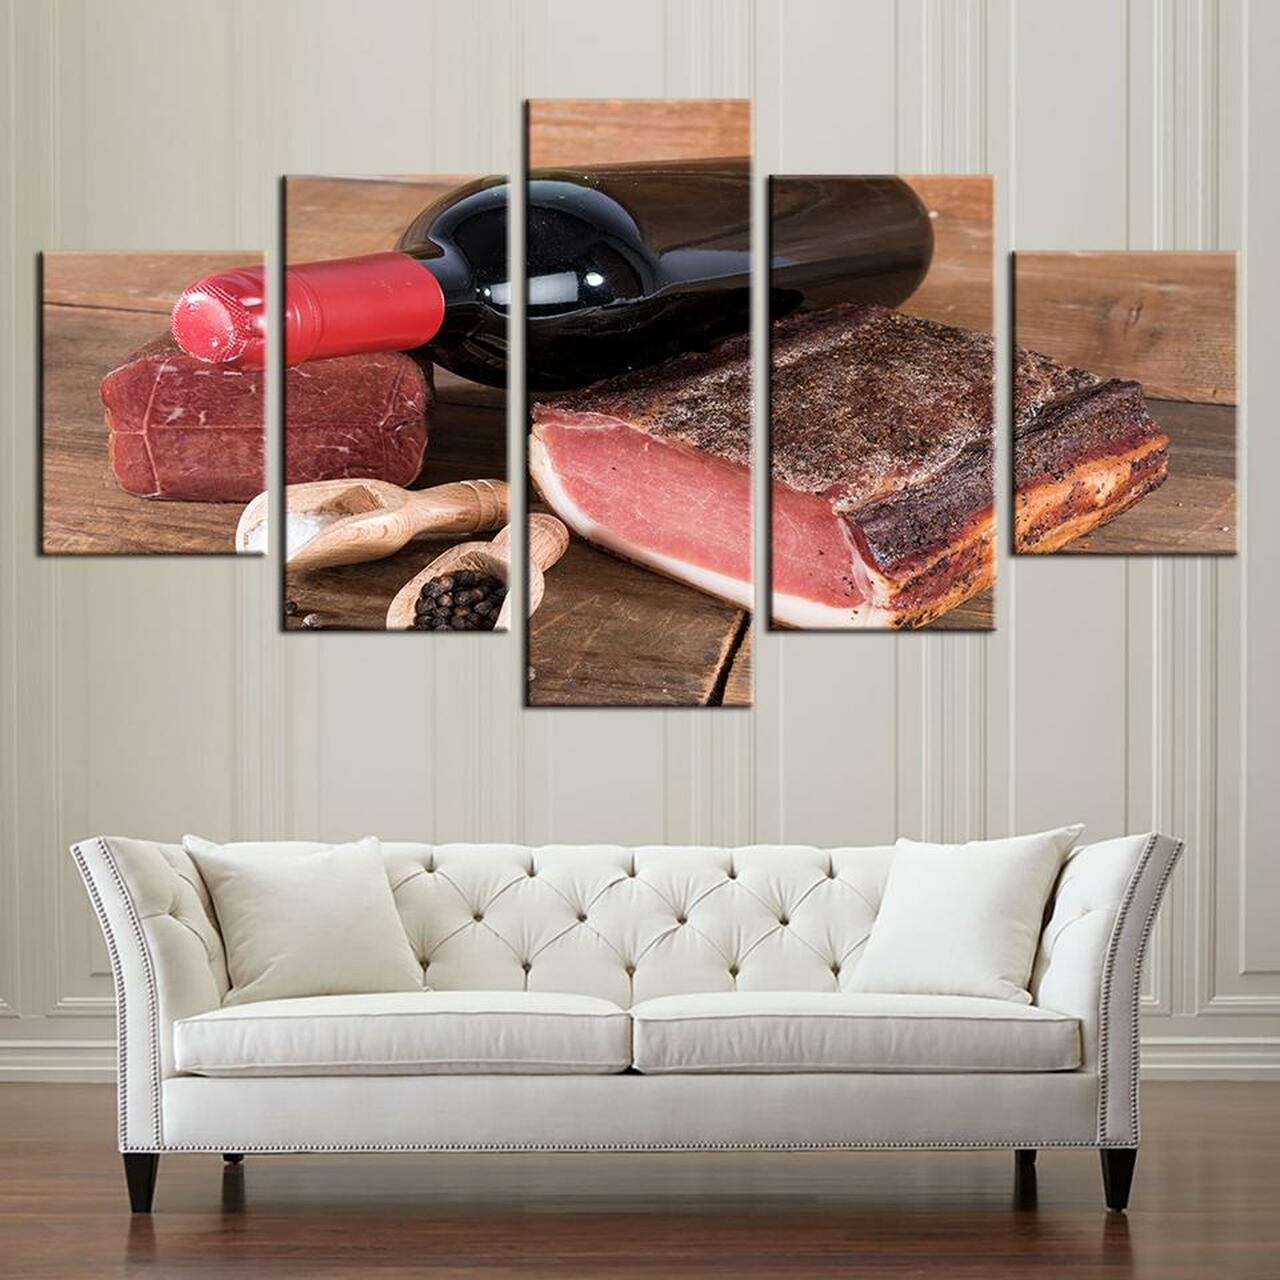 ham and wine 5 pices peinture sur toile impression sur toile toile art pour la dcoration intrieuretjccq